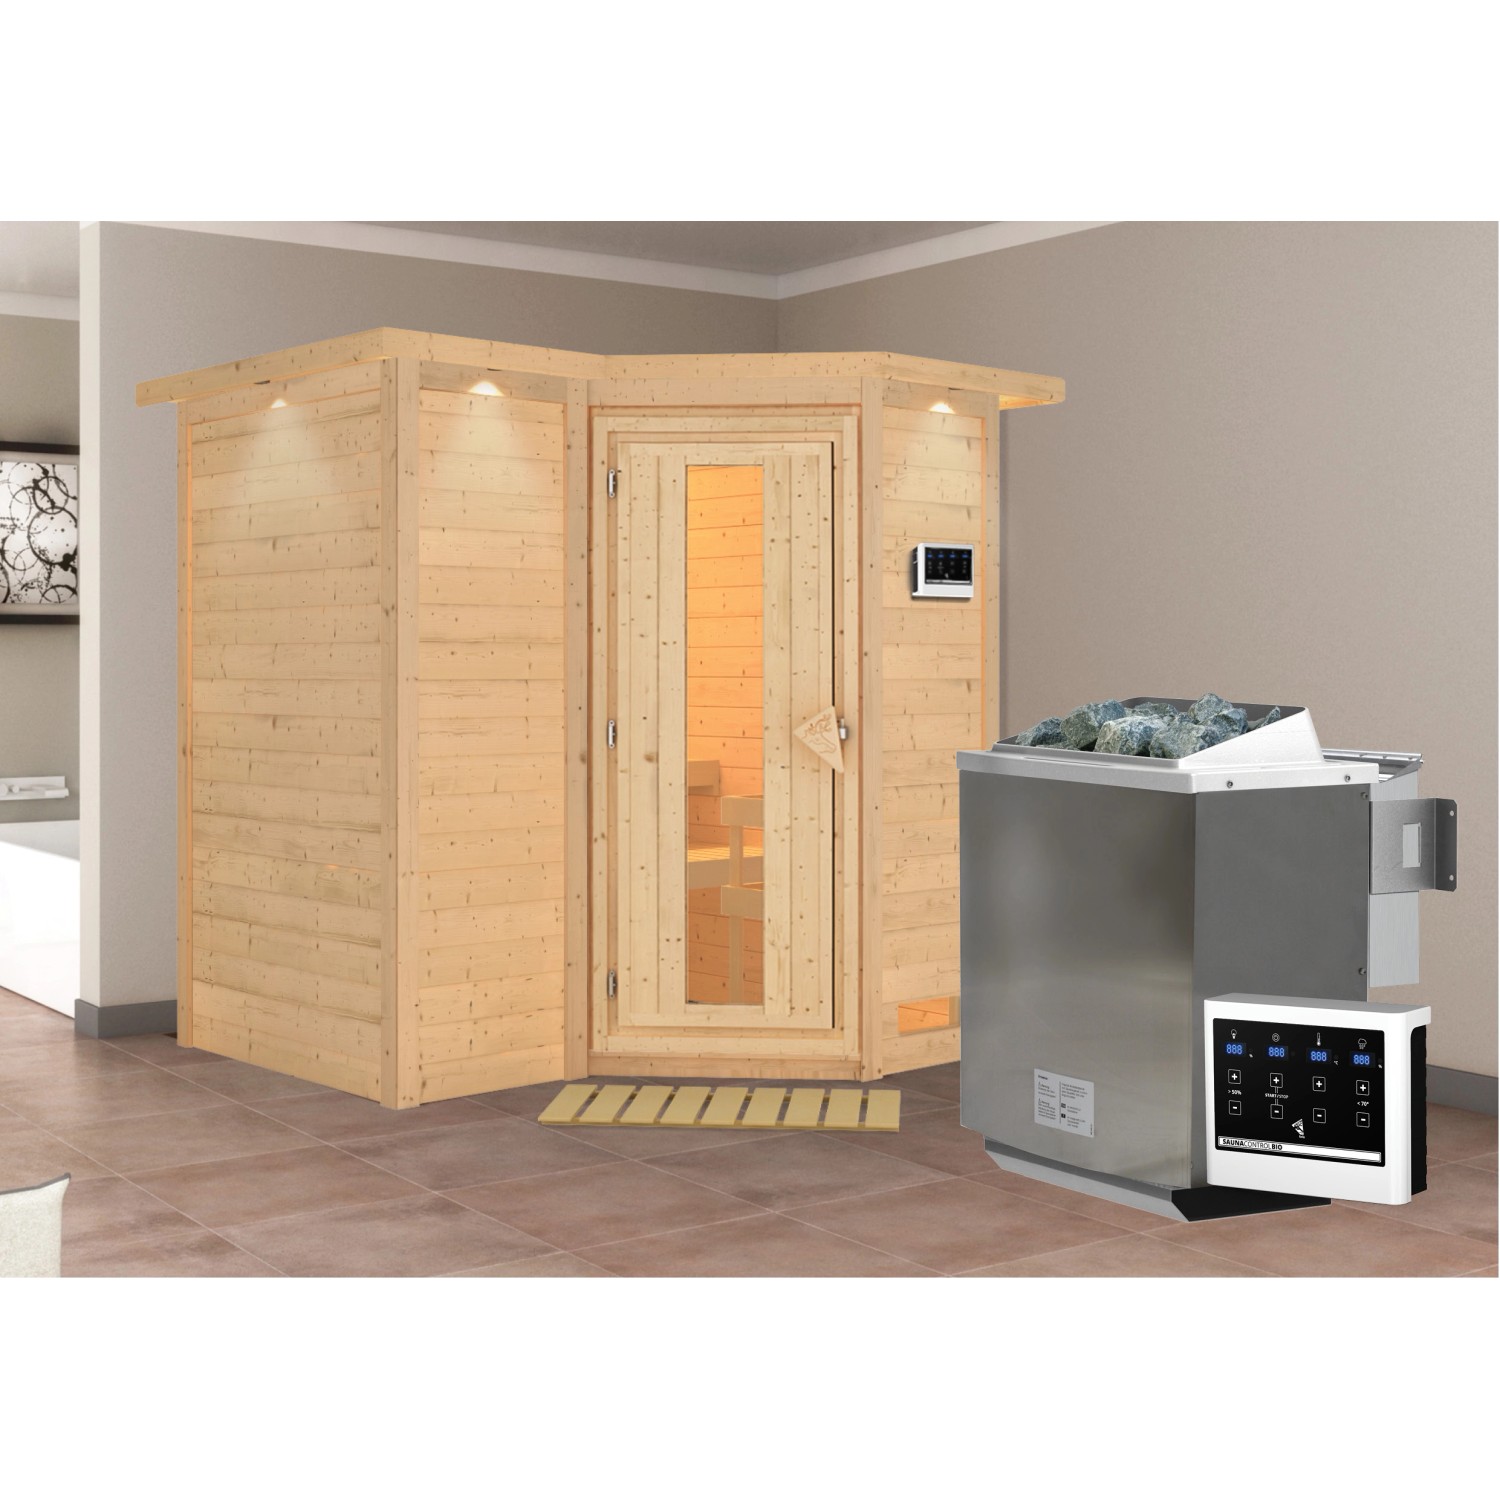 Woodfeeling Sauna Steena 1 inkl. Bio-Ofen 9 kW ext. Strg., Dachkranz, Energ günstig online kaufen